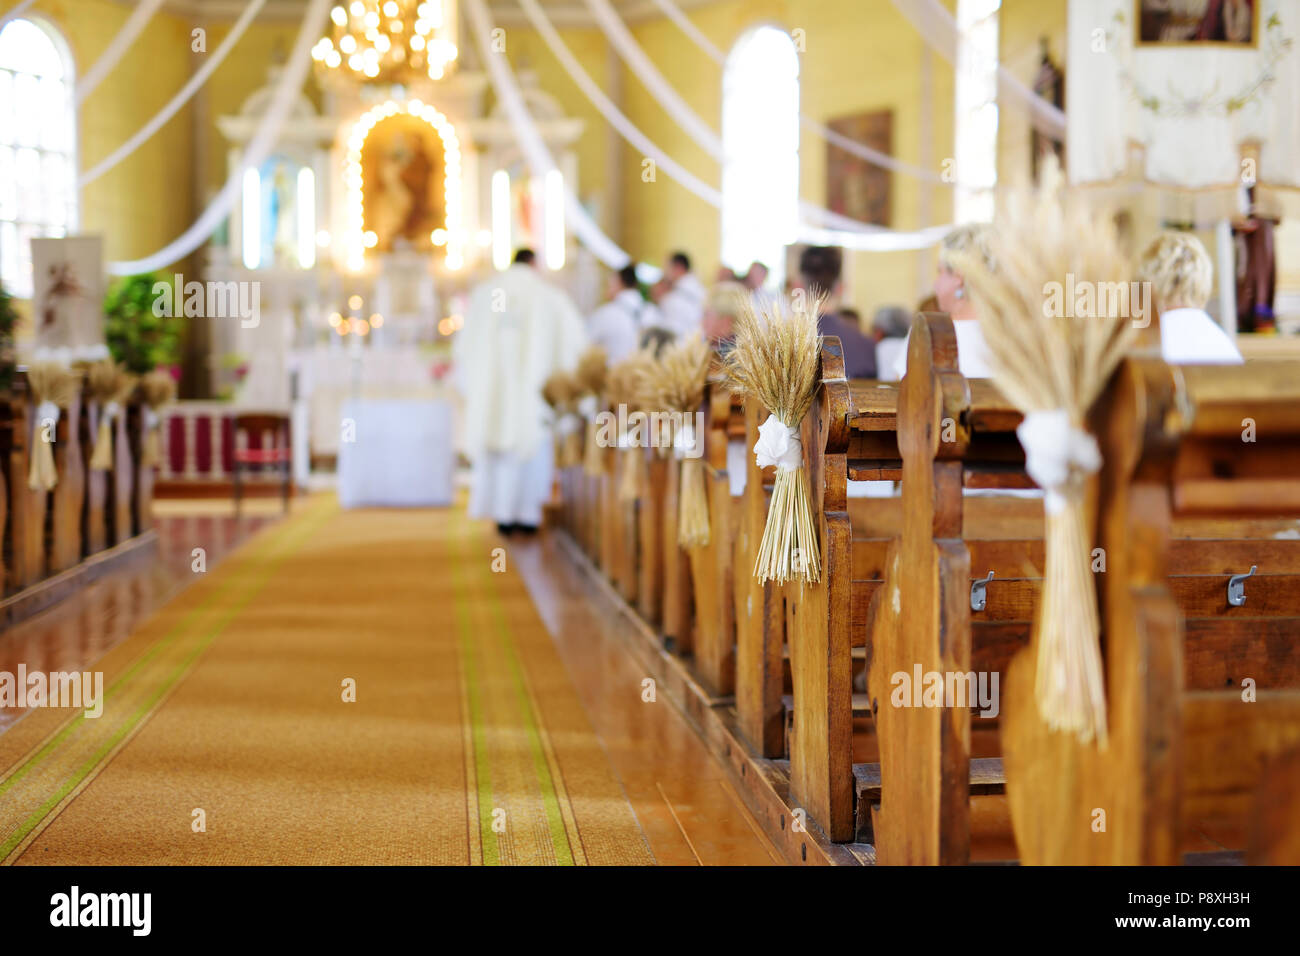 Schöne Roggen Hochzeit Dekoration in einer Kirche während katholische  Hochzeit Zeremonie Stockfotografie - Alamy